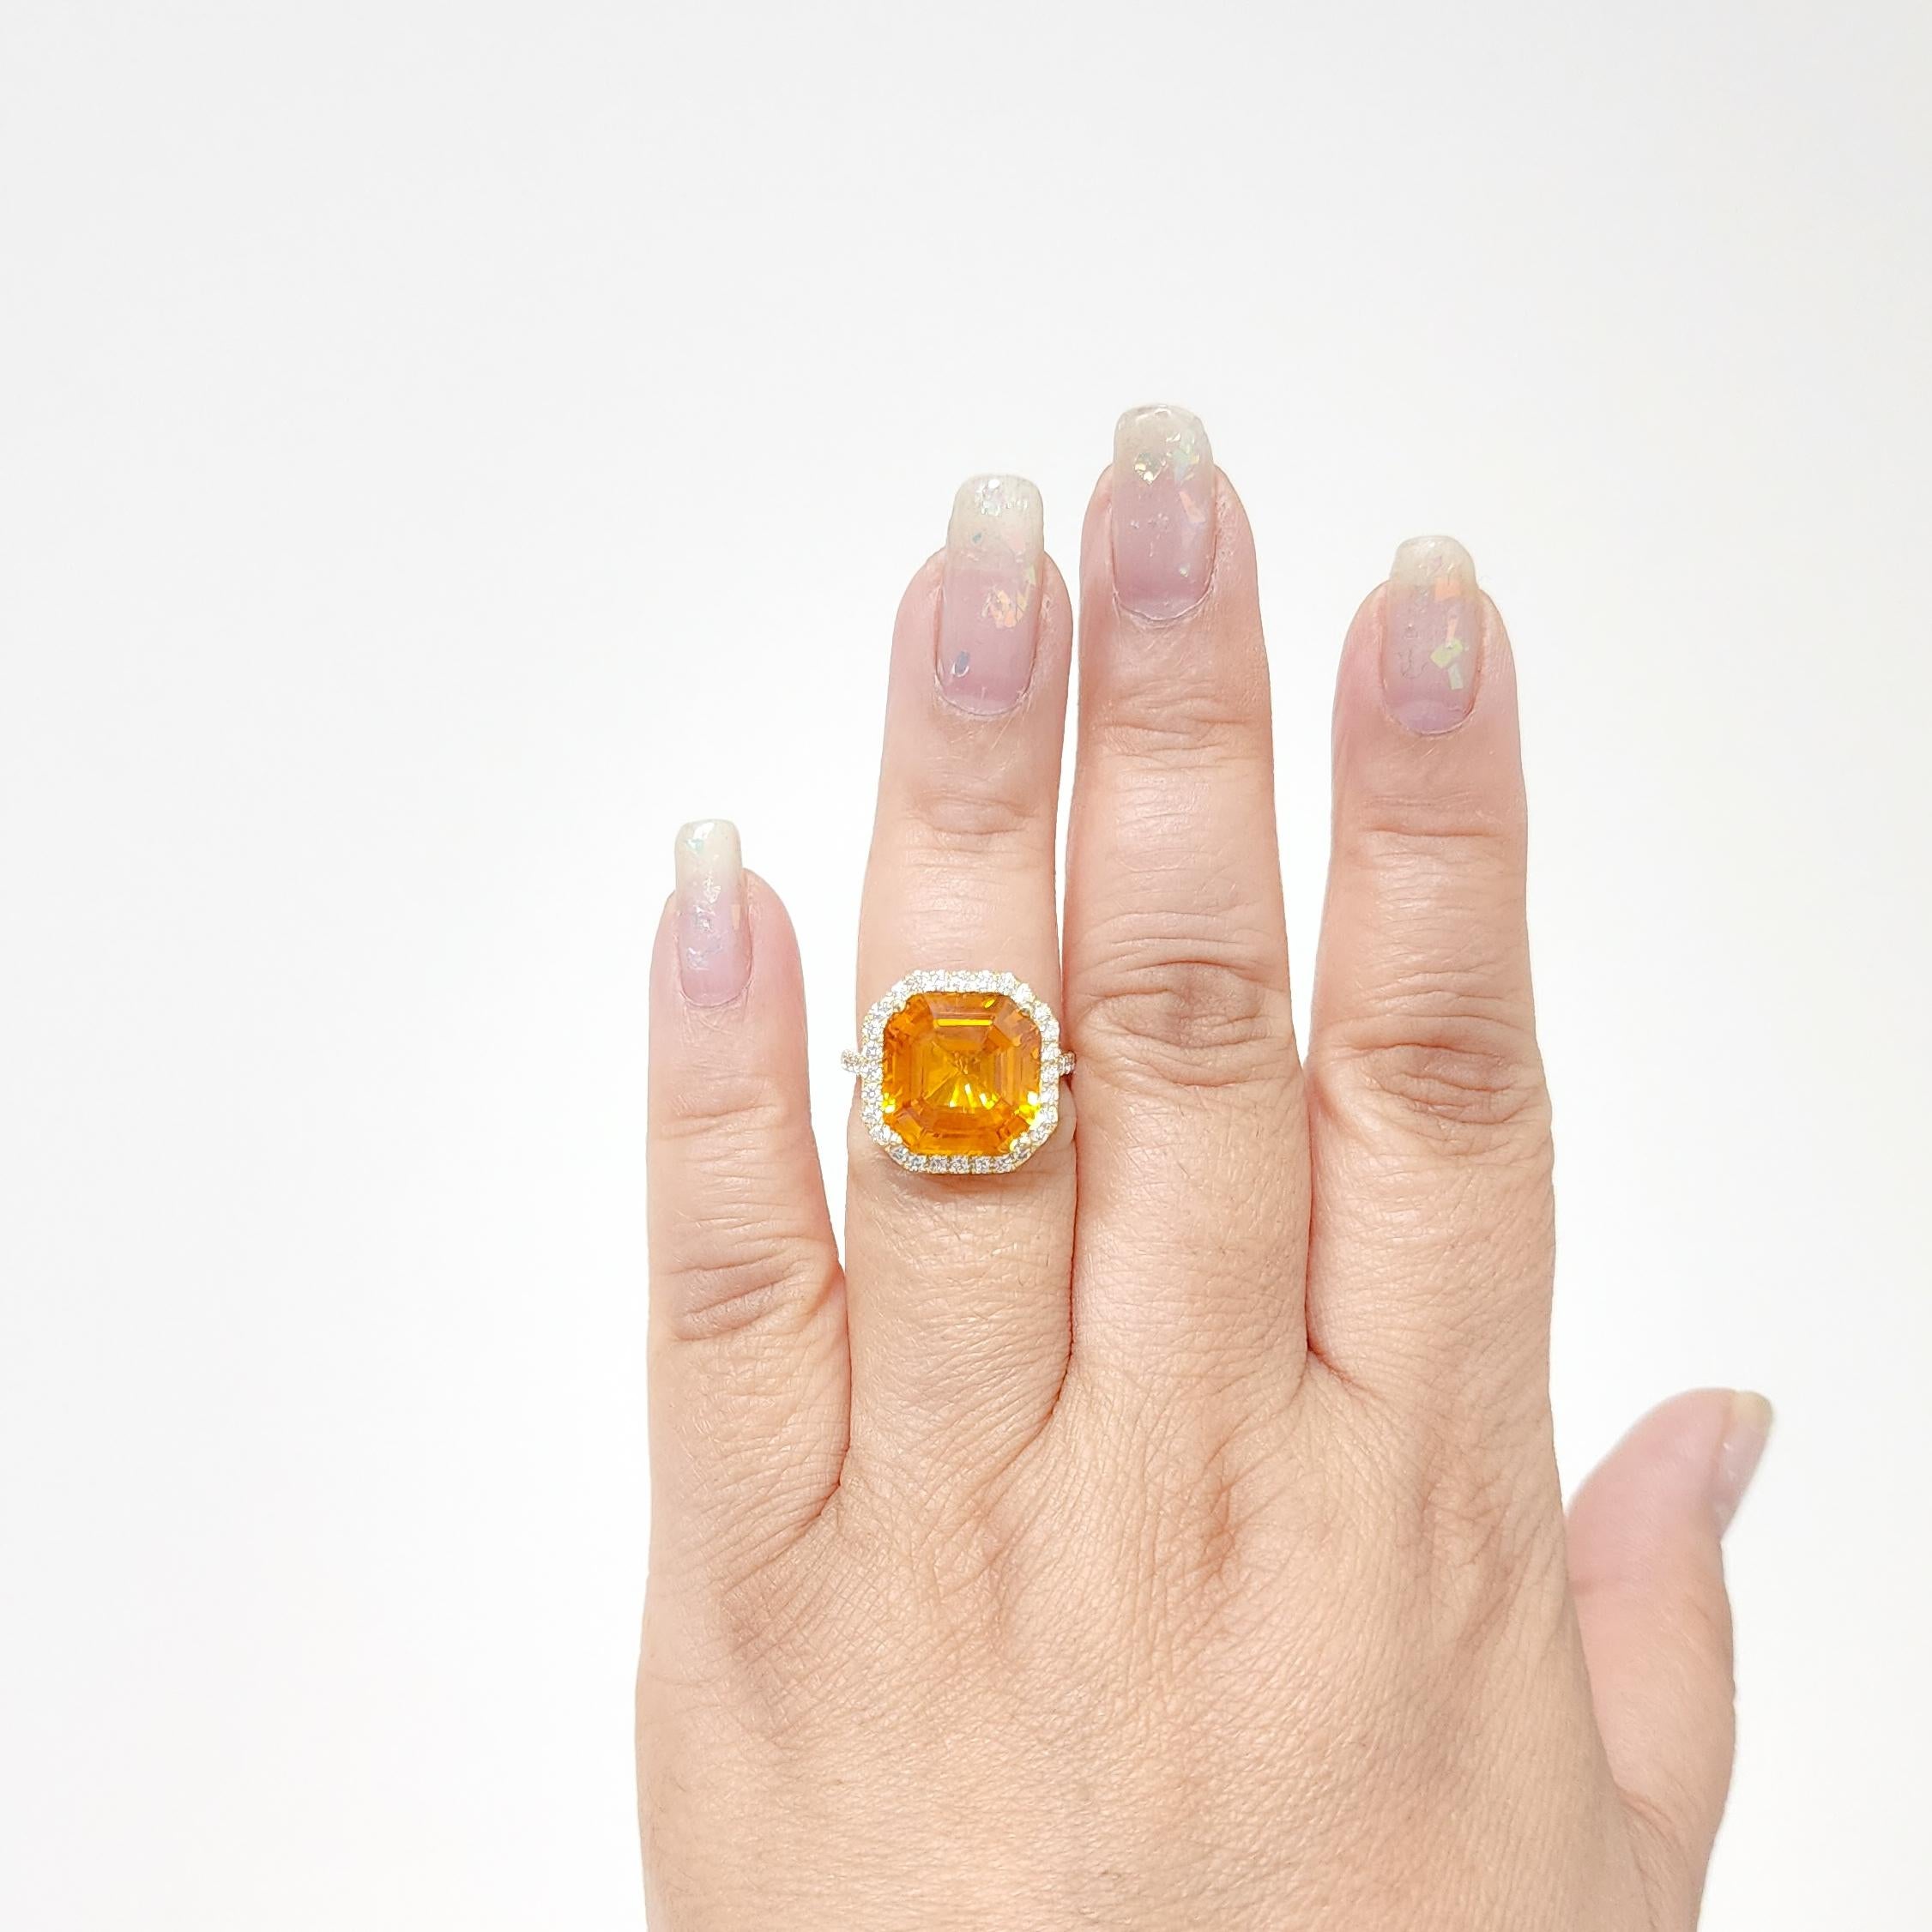 Wunderschönes 13,11-karätiges gelb-orangefarbenes Saphiraktagon mit 0,75-karätigen weißen und reinen Diamanten von guter Qualität.  Handgefertigt in 18k Gelbgold.  Ring Größe 6,5.
Inklusive GIA-Zertifikat.